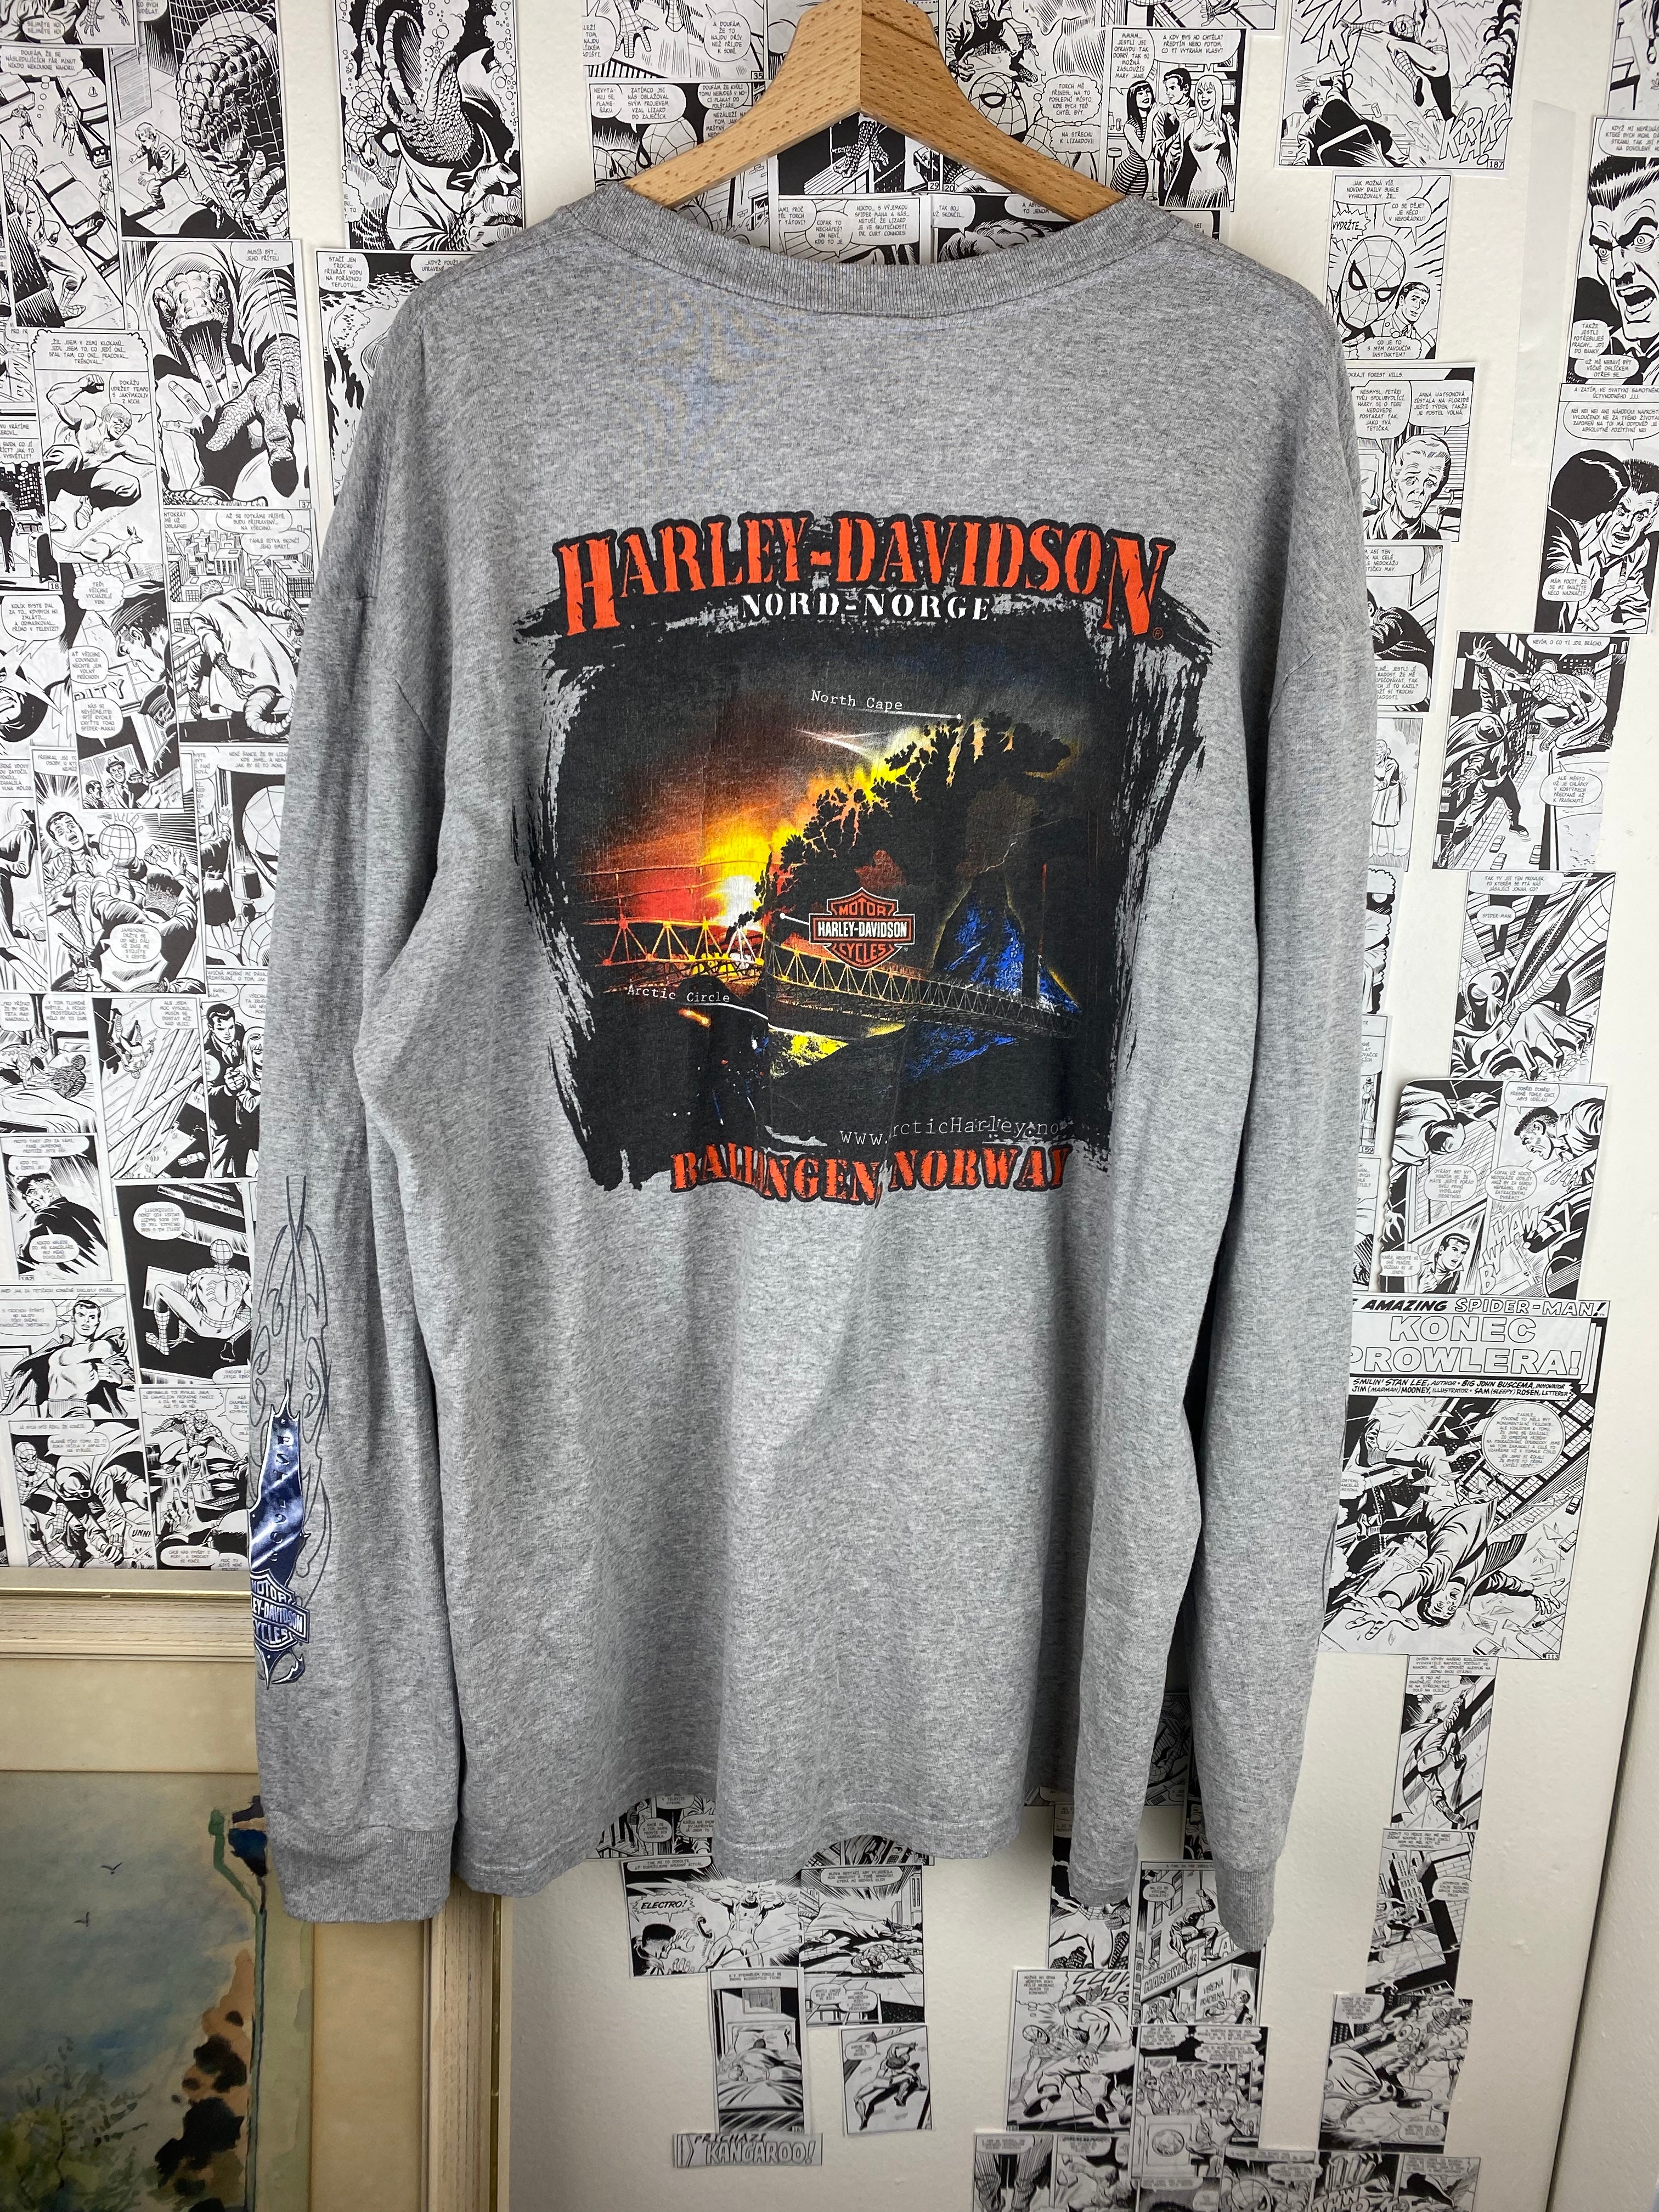 Vintage Harley Davidson - Norway “Ballangen” 00s t-shirt - size XL